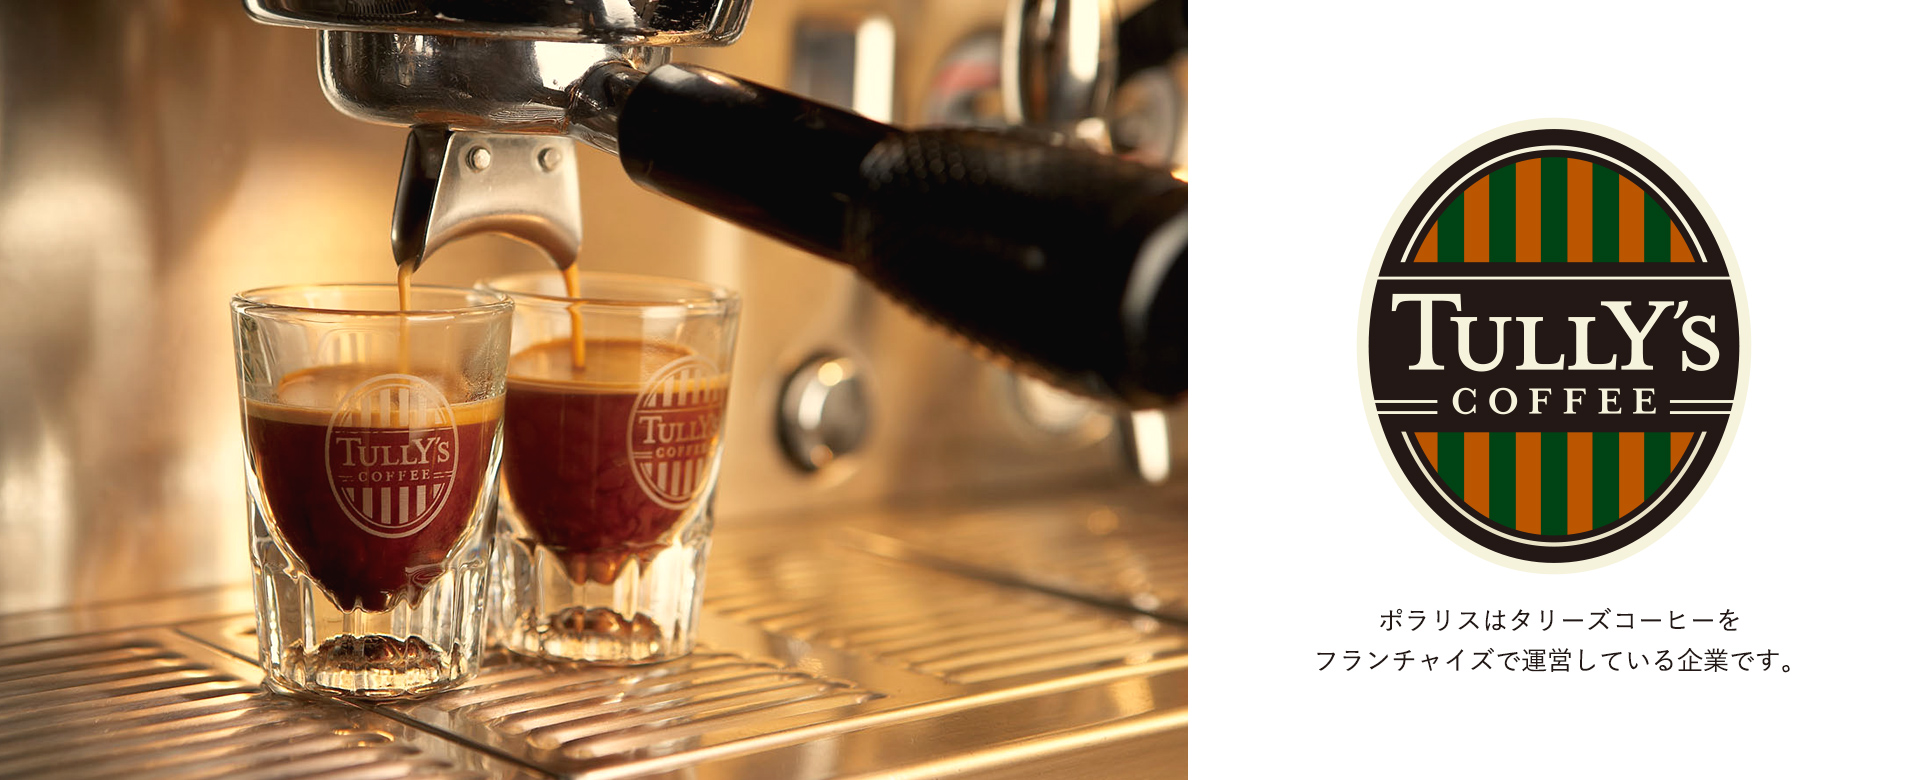 株式会社ポラリスはタリーズコーヒージャパン株式会社とフランチャイズ契約を締結し、現在首都圏を中心に８店舗のタリーズコーヒーの店舗運営を行っています。